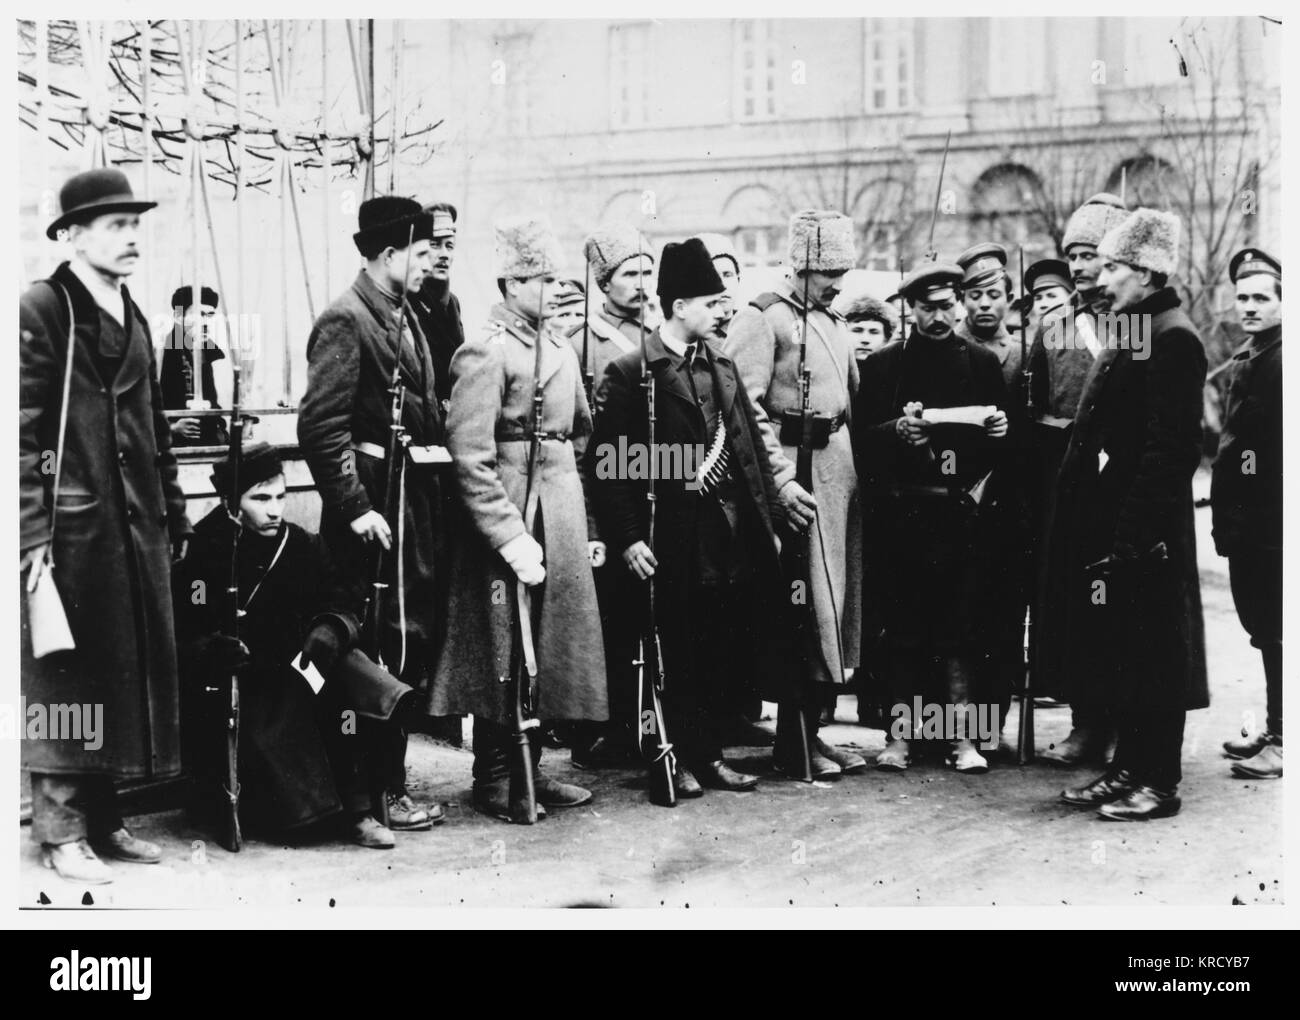 Los miembros de la Guardia Roja de verificar los documentos de identidad de personas en las calles de Petrogrado : revoluciones vienen y van, pero la burocracia es para siempre. Fecha: Octubre de 1917 Foto de stock